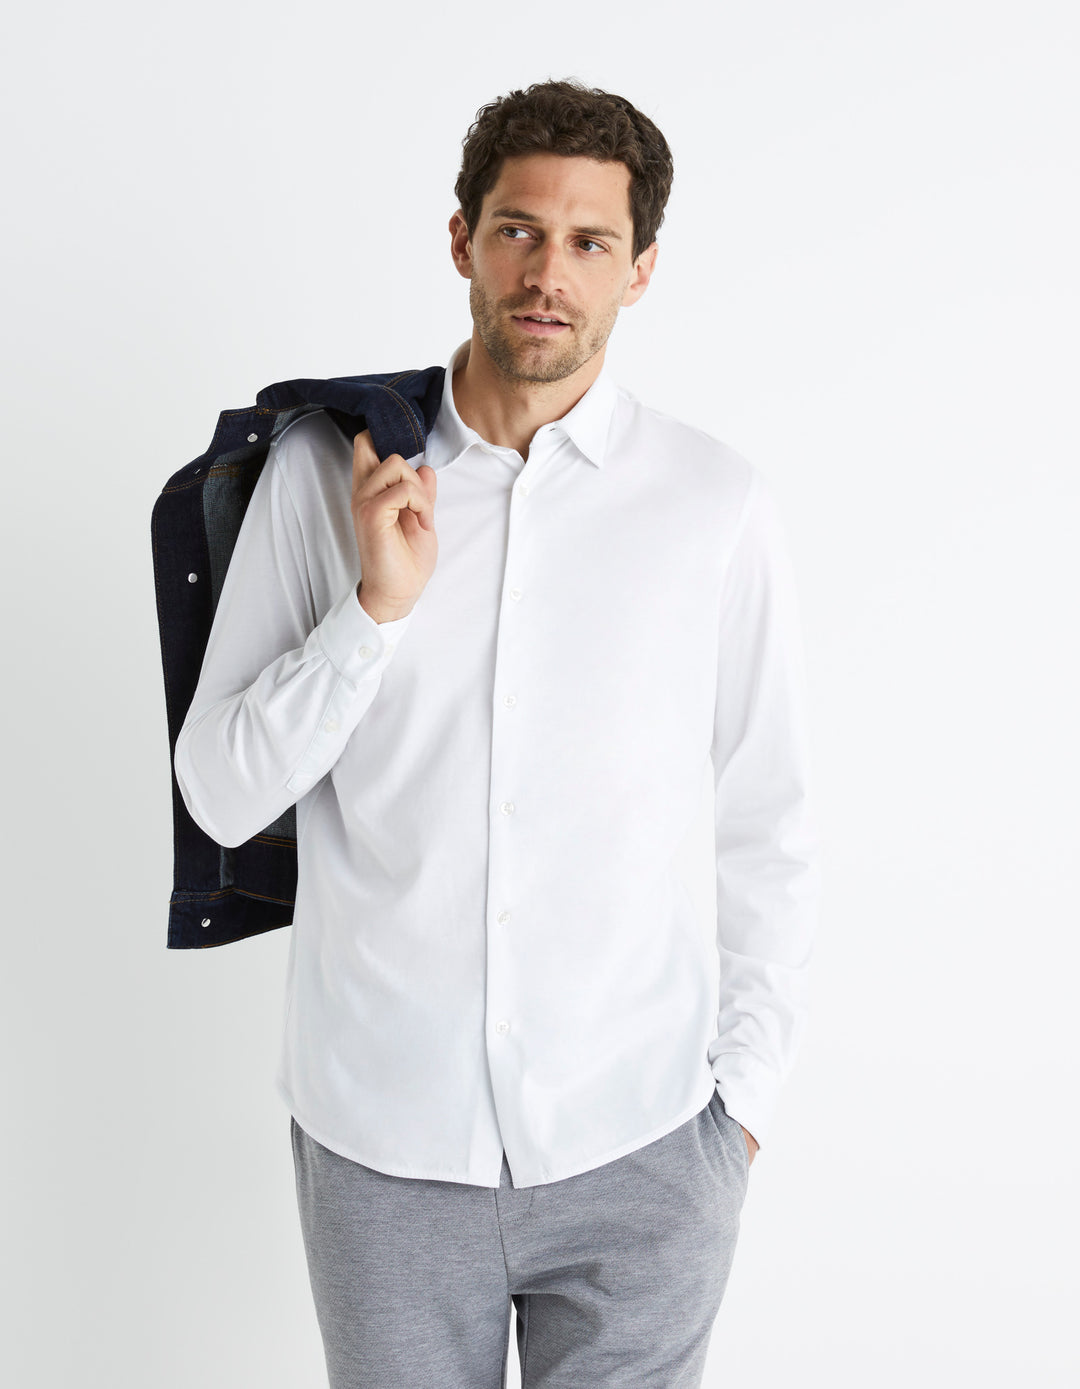 Modern fit shirt 100% cotton